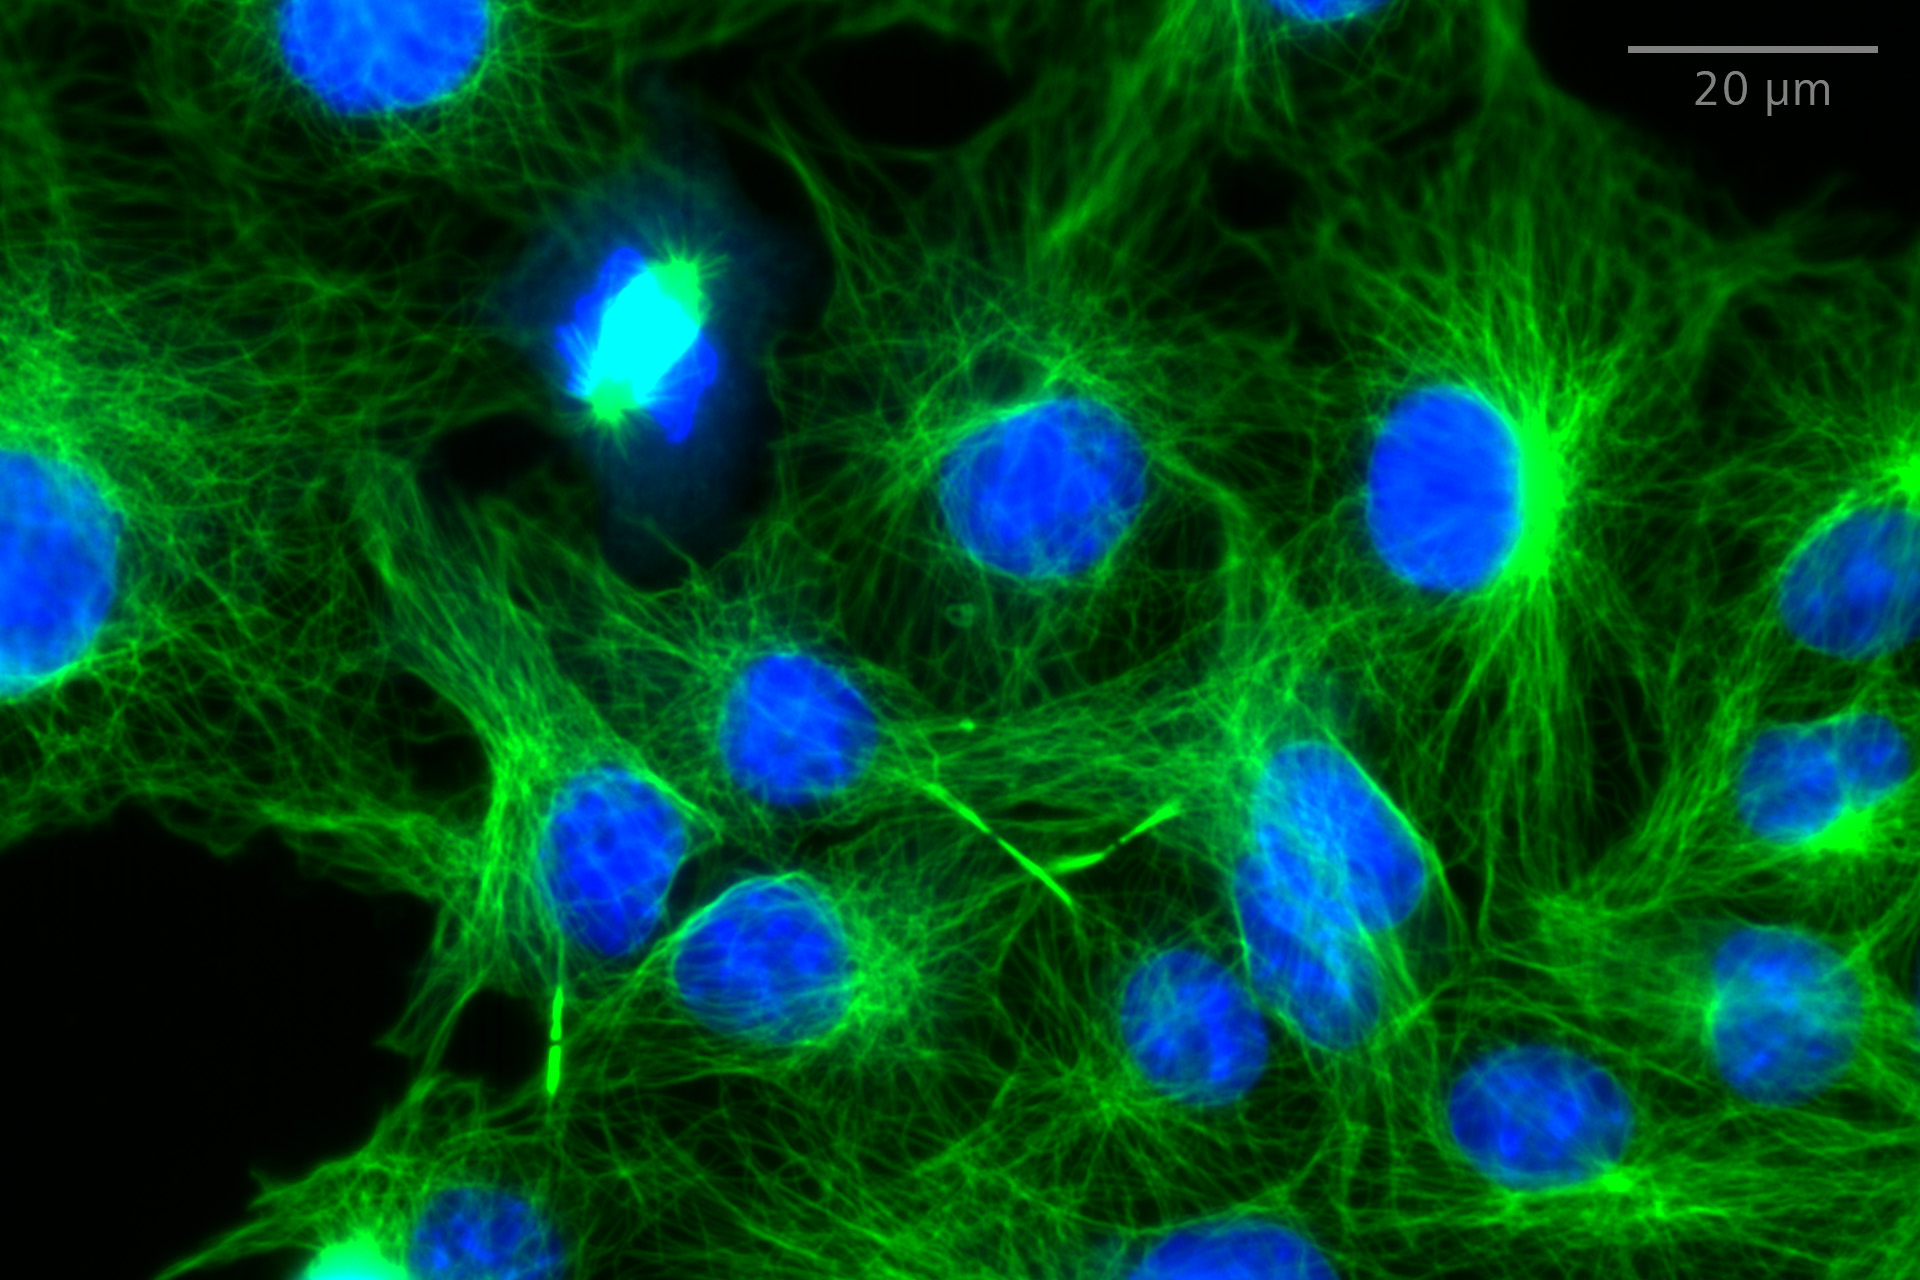 SIM² Apotome: comparación de imágenes de un solo plano de widefield y SIM² Apotome de células COS-7 teñidas para microtúbulos (anti-α-tubulina Alexa fluor 488, verde) y núcleos (Hoechst, azul). Objetivo: LD LCI Plan-Apochromat 25× / 0,8 Imm Corr